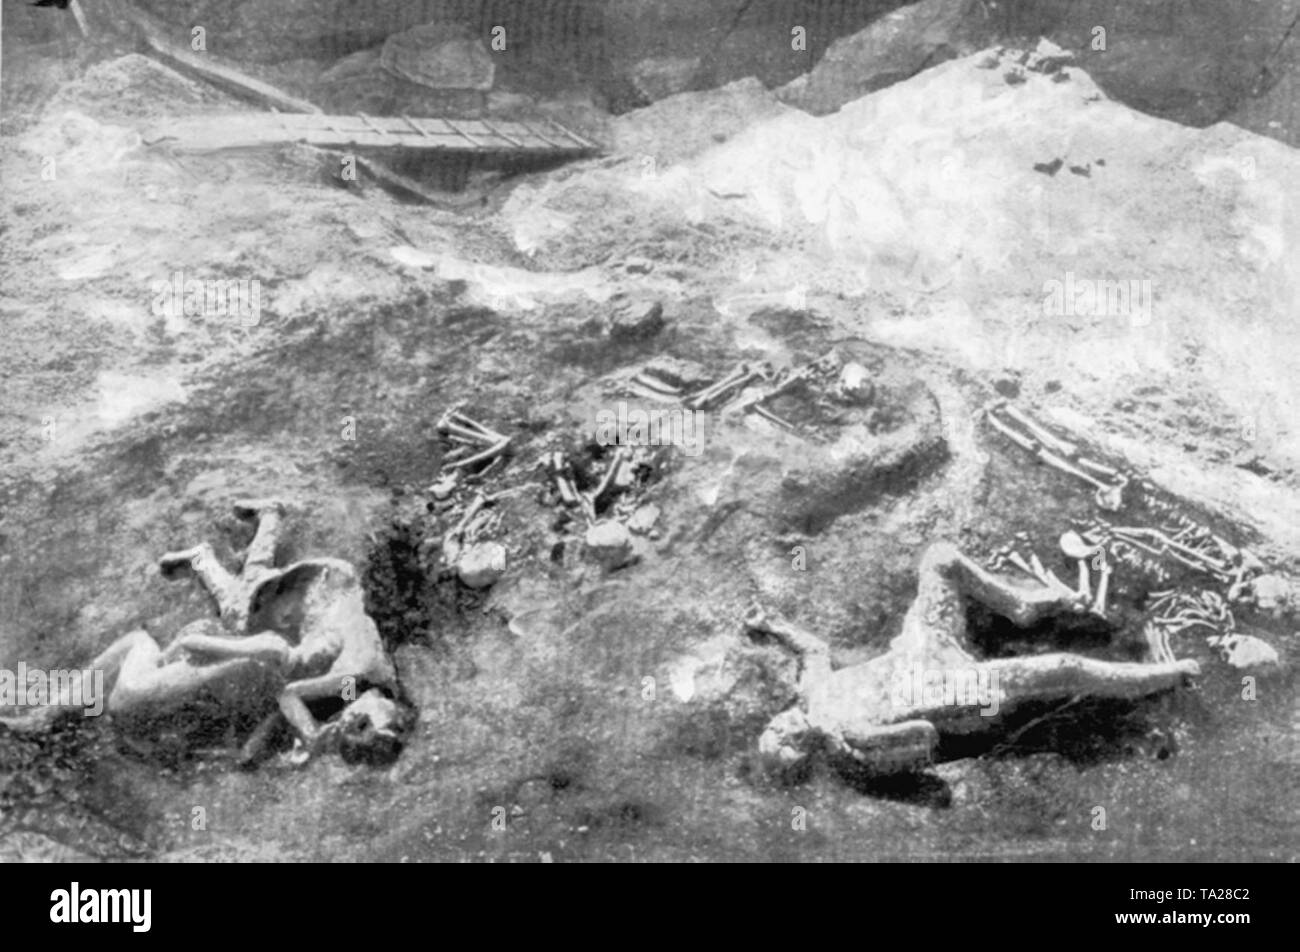 Pompei fu distrutta e sepolta sotto le ceneri e pomice in eruzione del Vesuvio nel 79 d.c. La maggior parte dei circa 10.000 abitanti è morto. Molte delle vittime erano conservati dalle ceneri vulcaniche, come essi sono stati sorpresi dalla catastrofe di corsa Foto Stock